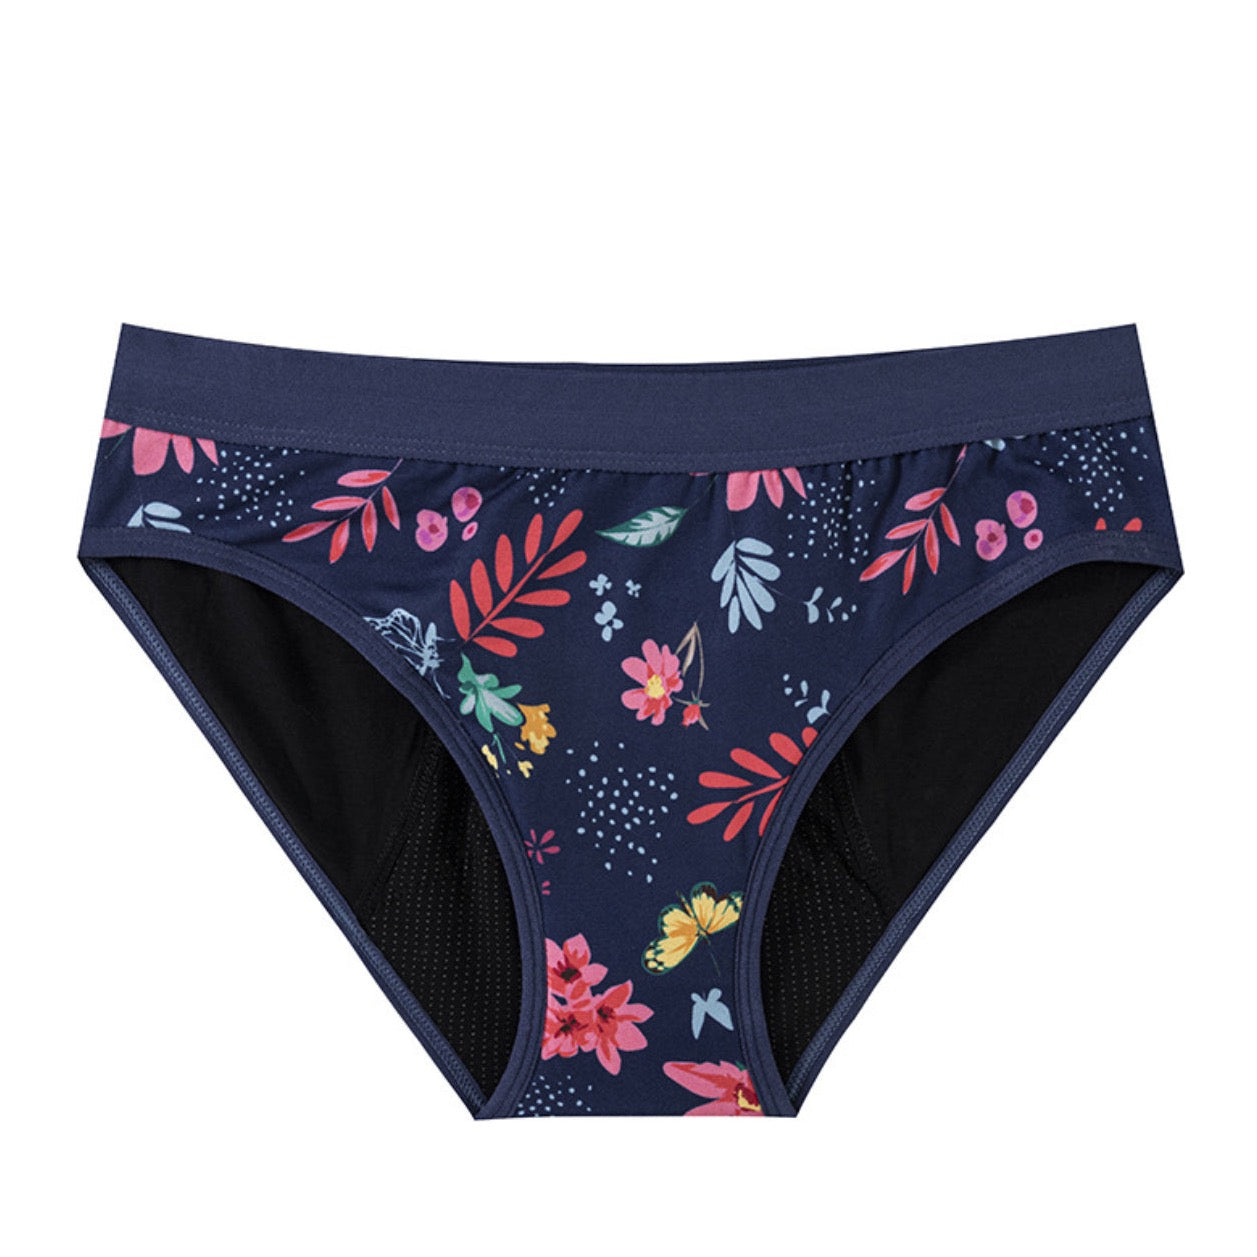 Knicked Teen Period Underwear - Flower Power - Limit Edition, Little Vibes